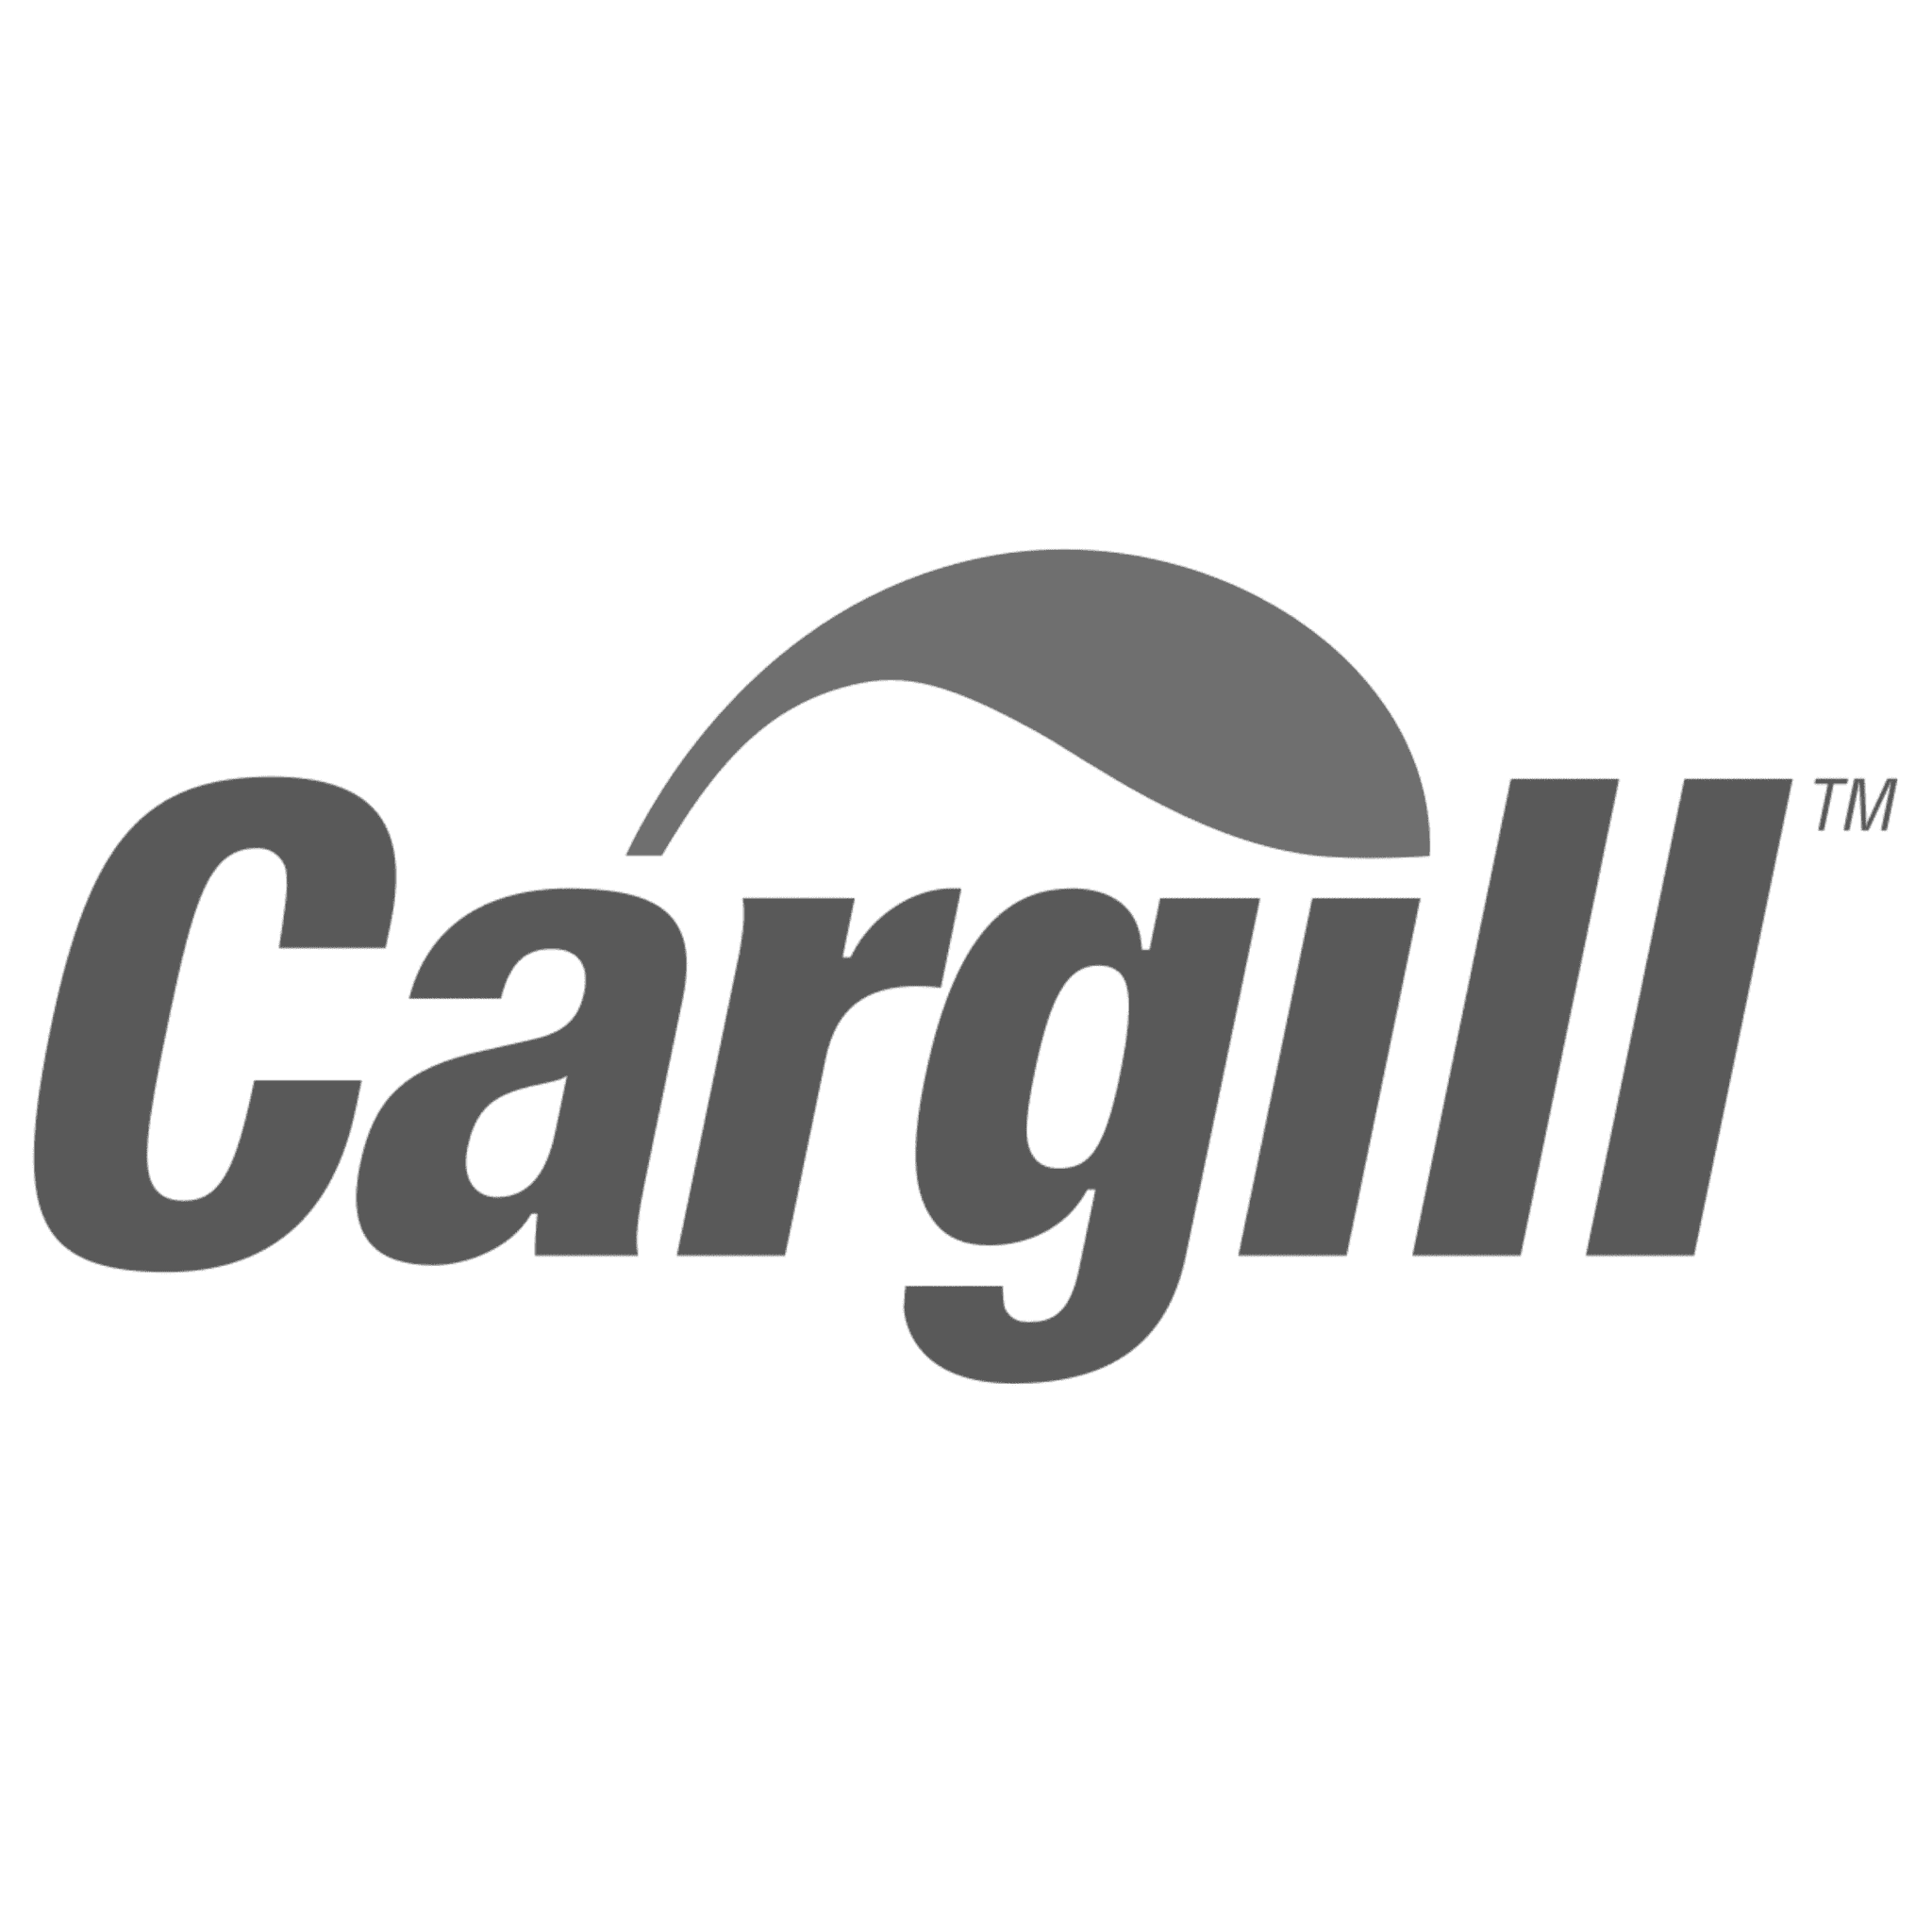 Cargill Cinza